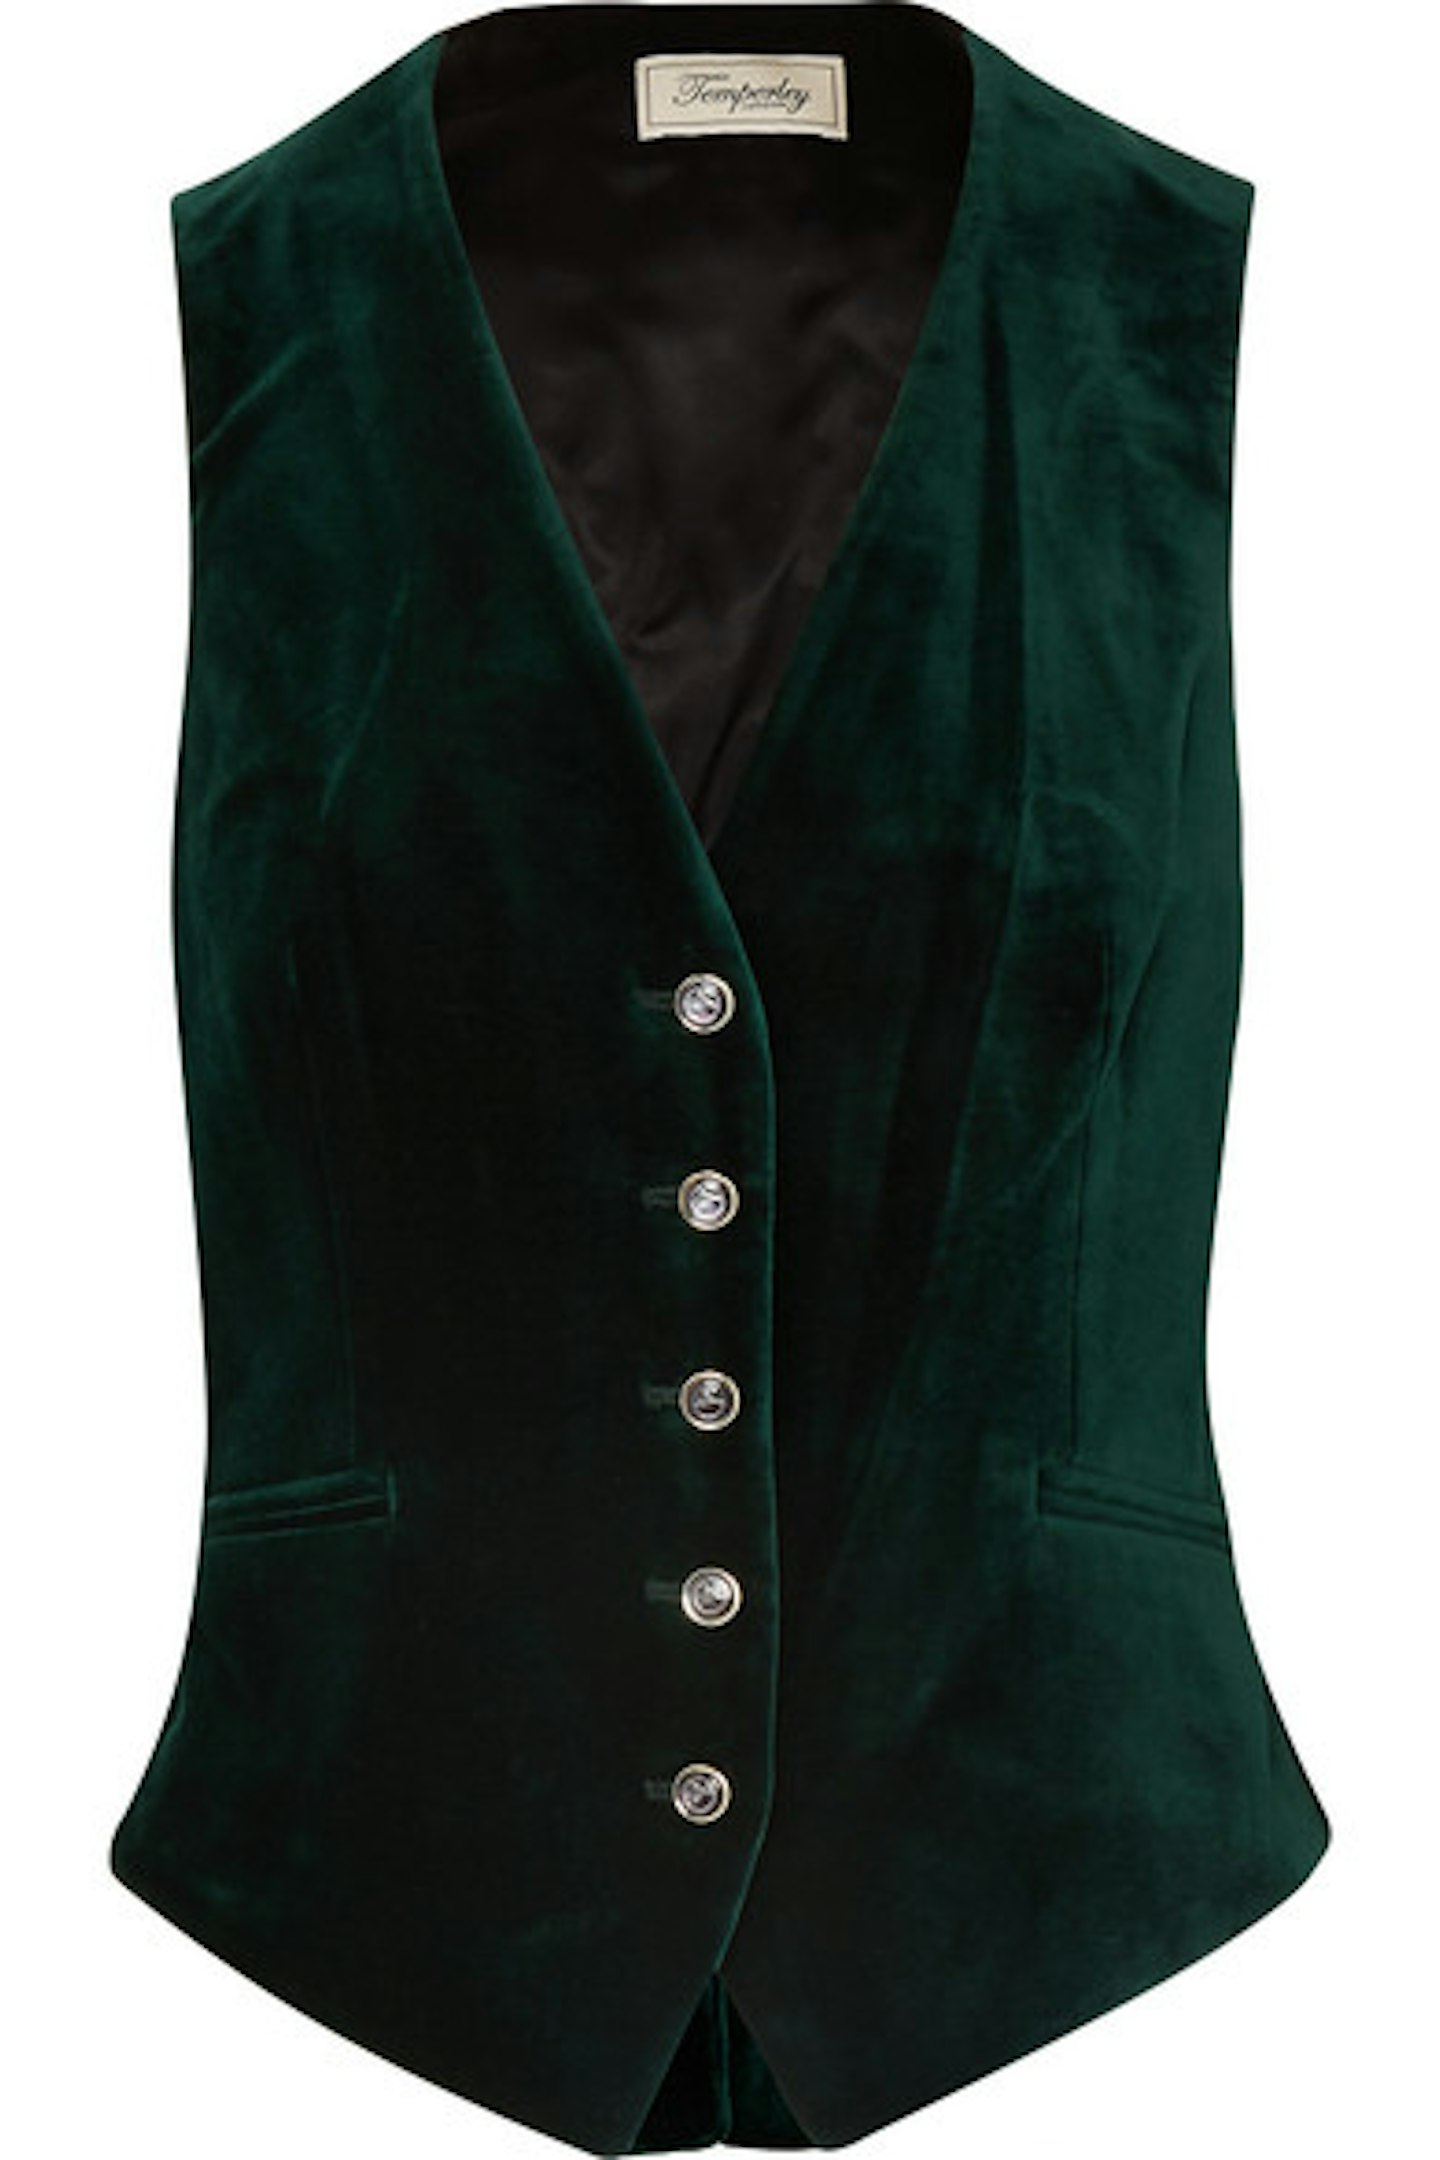 Temperley London, Green Velvet Waistcoat, £396